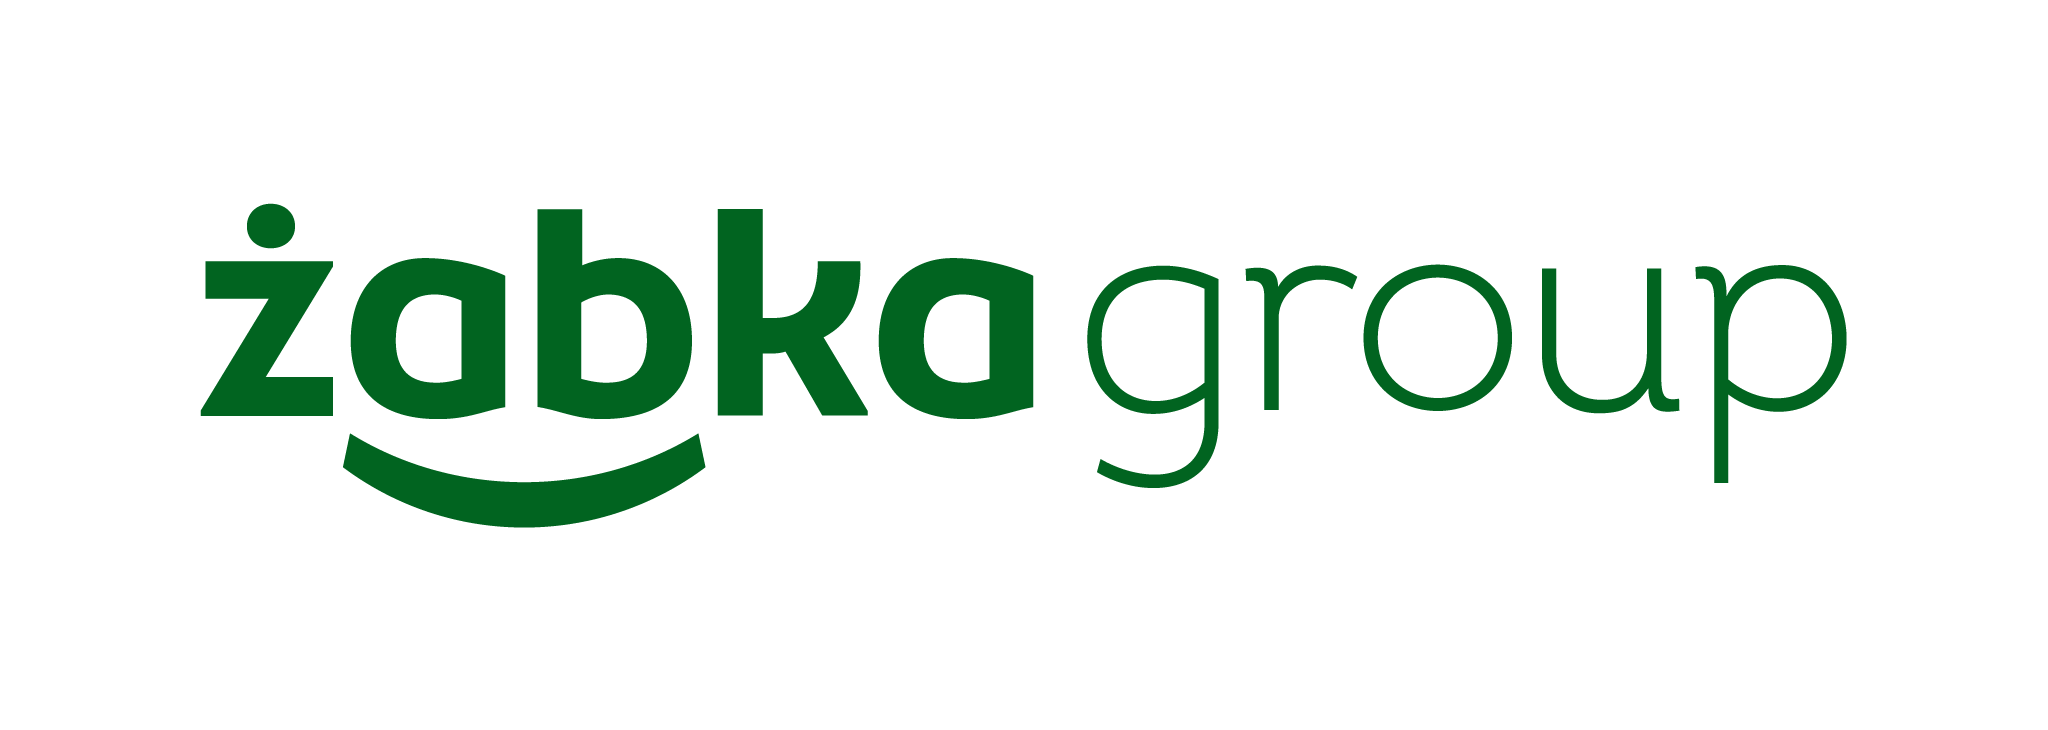 zabkagroup_logo